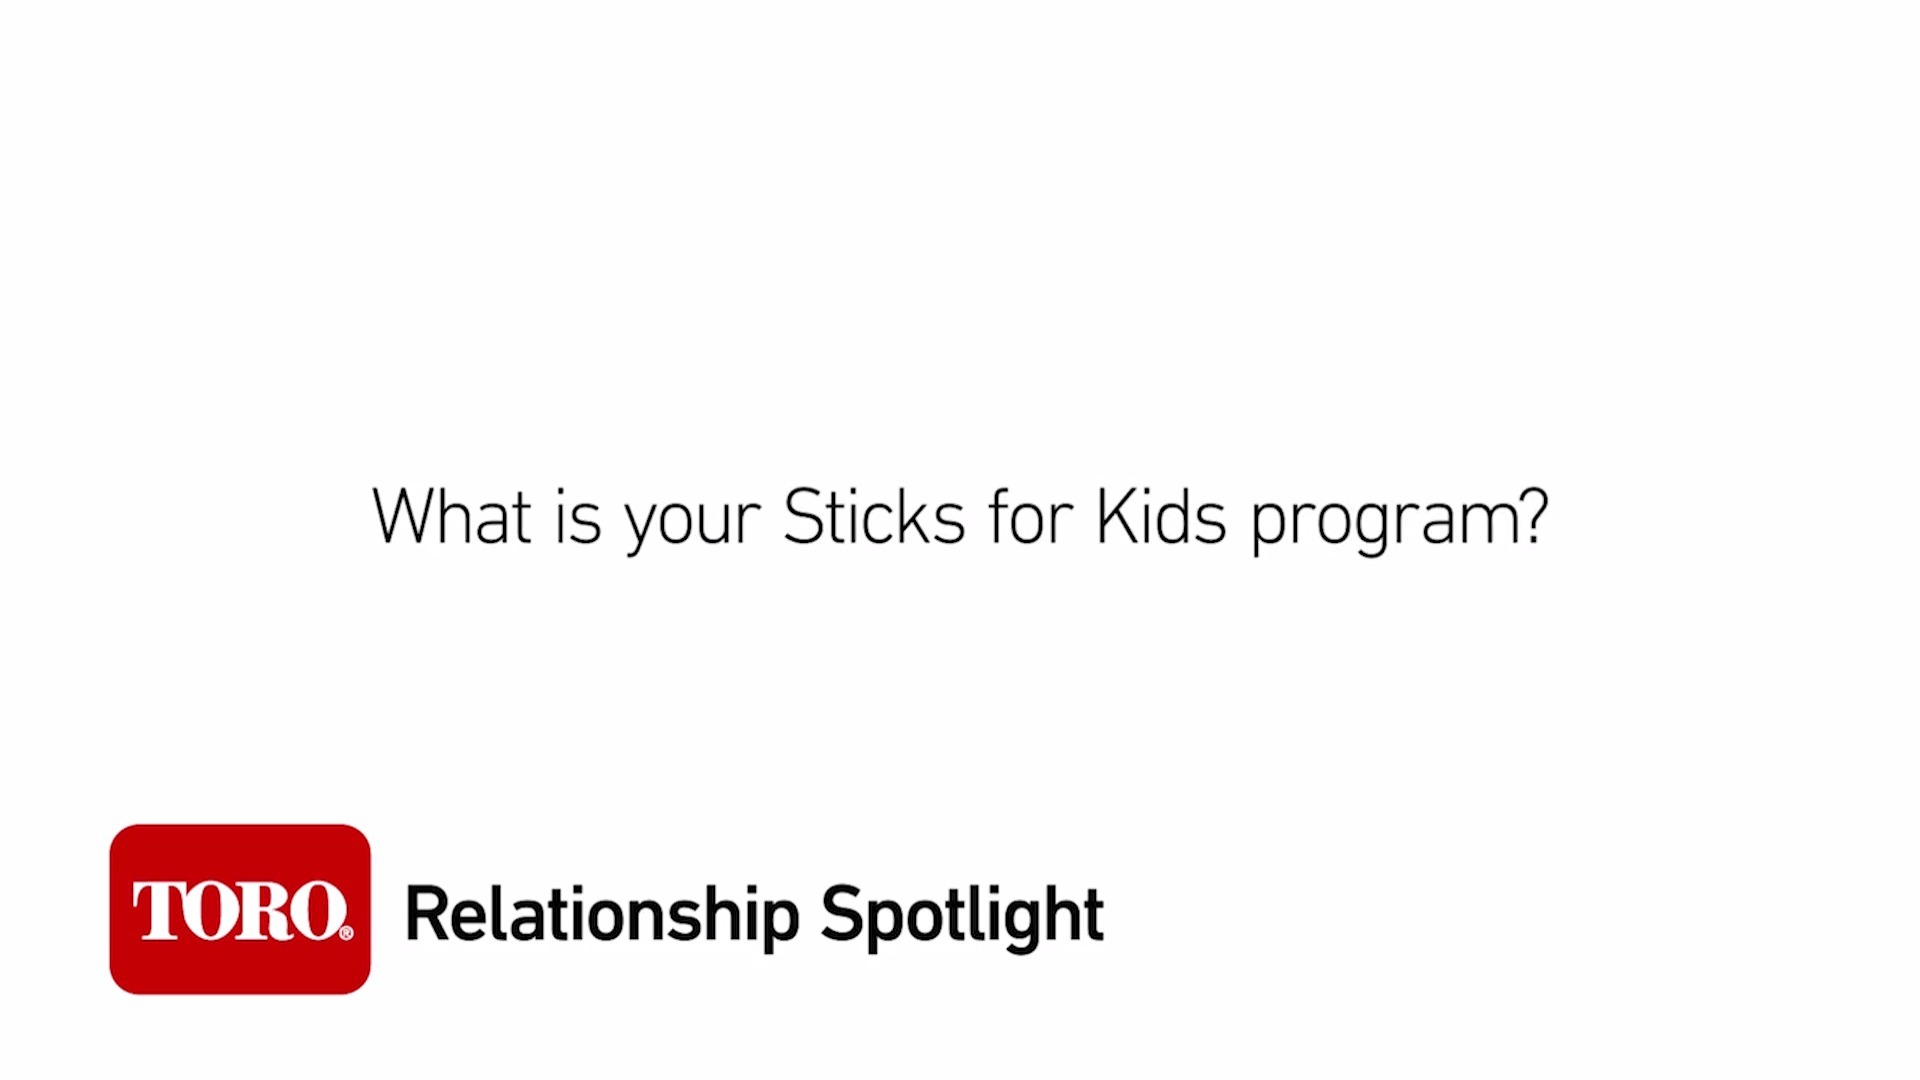 Relationship Spotlight: Sticks for Kids